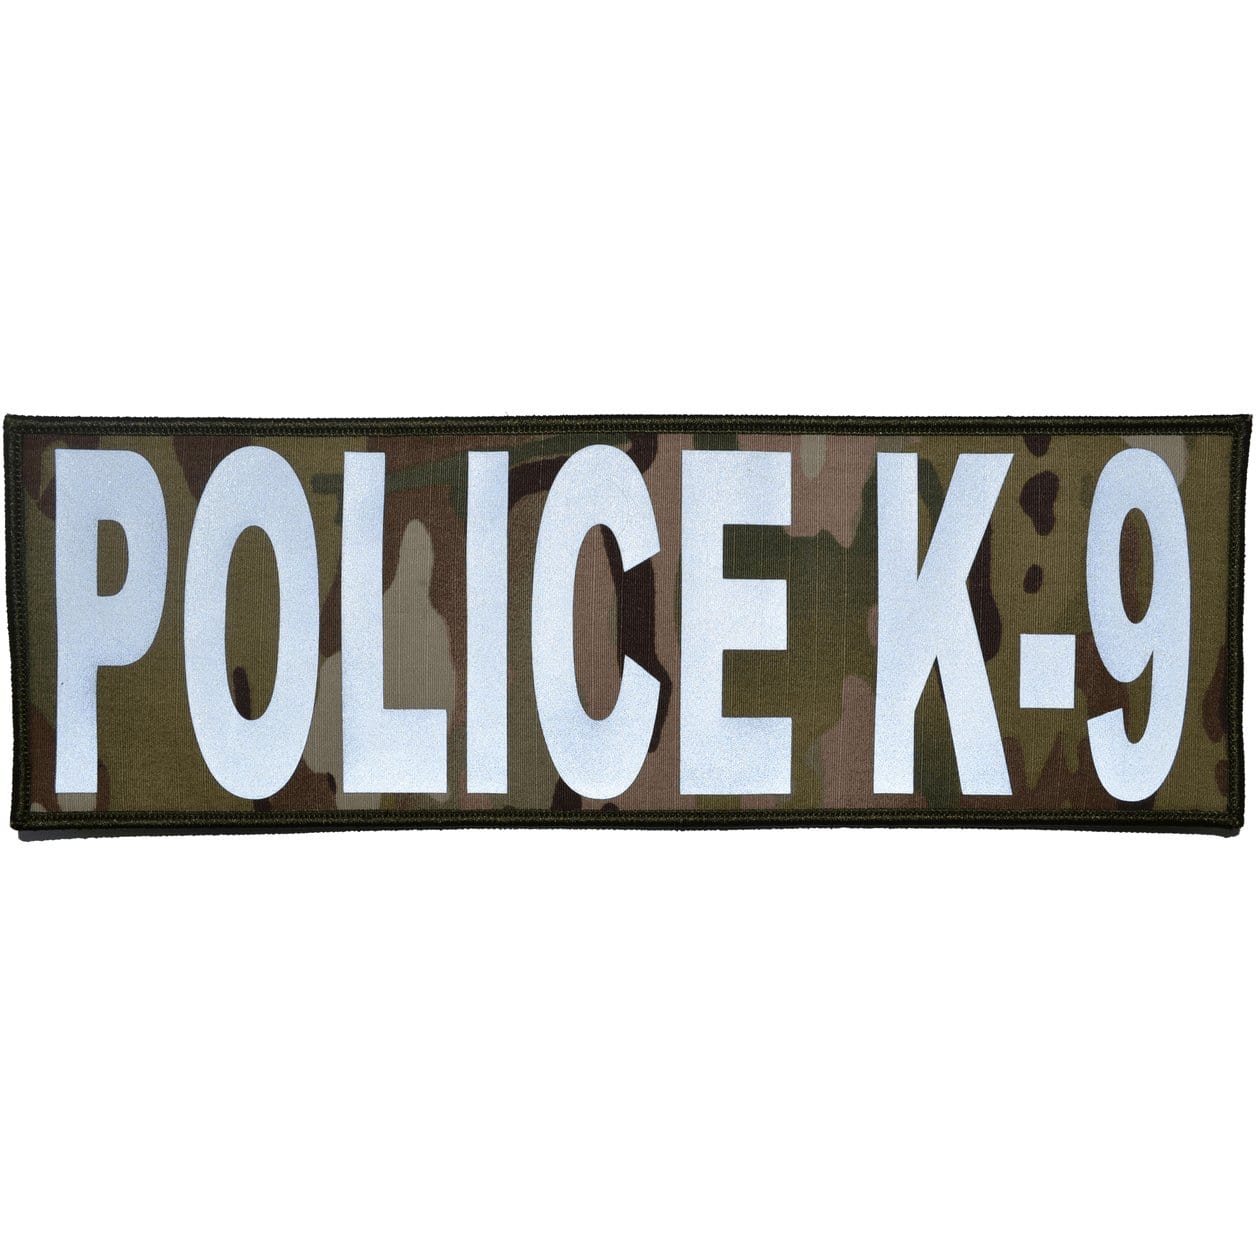 Police K-9 Reflective - 4x12 Patch